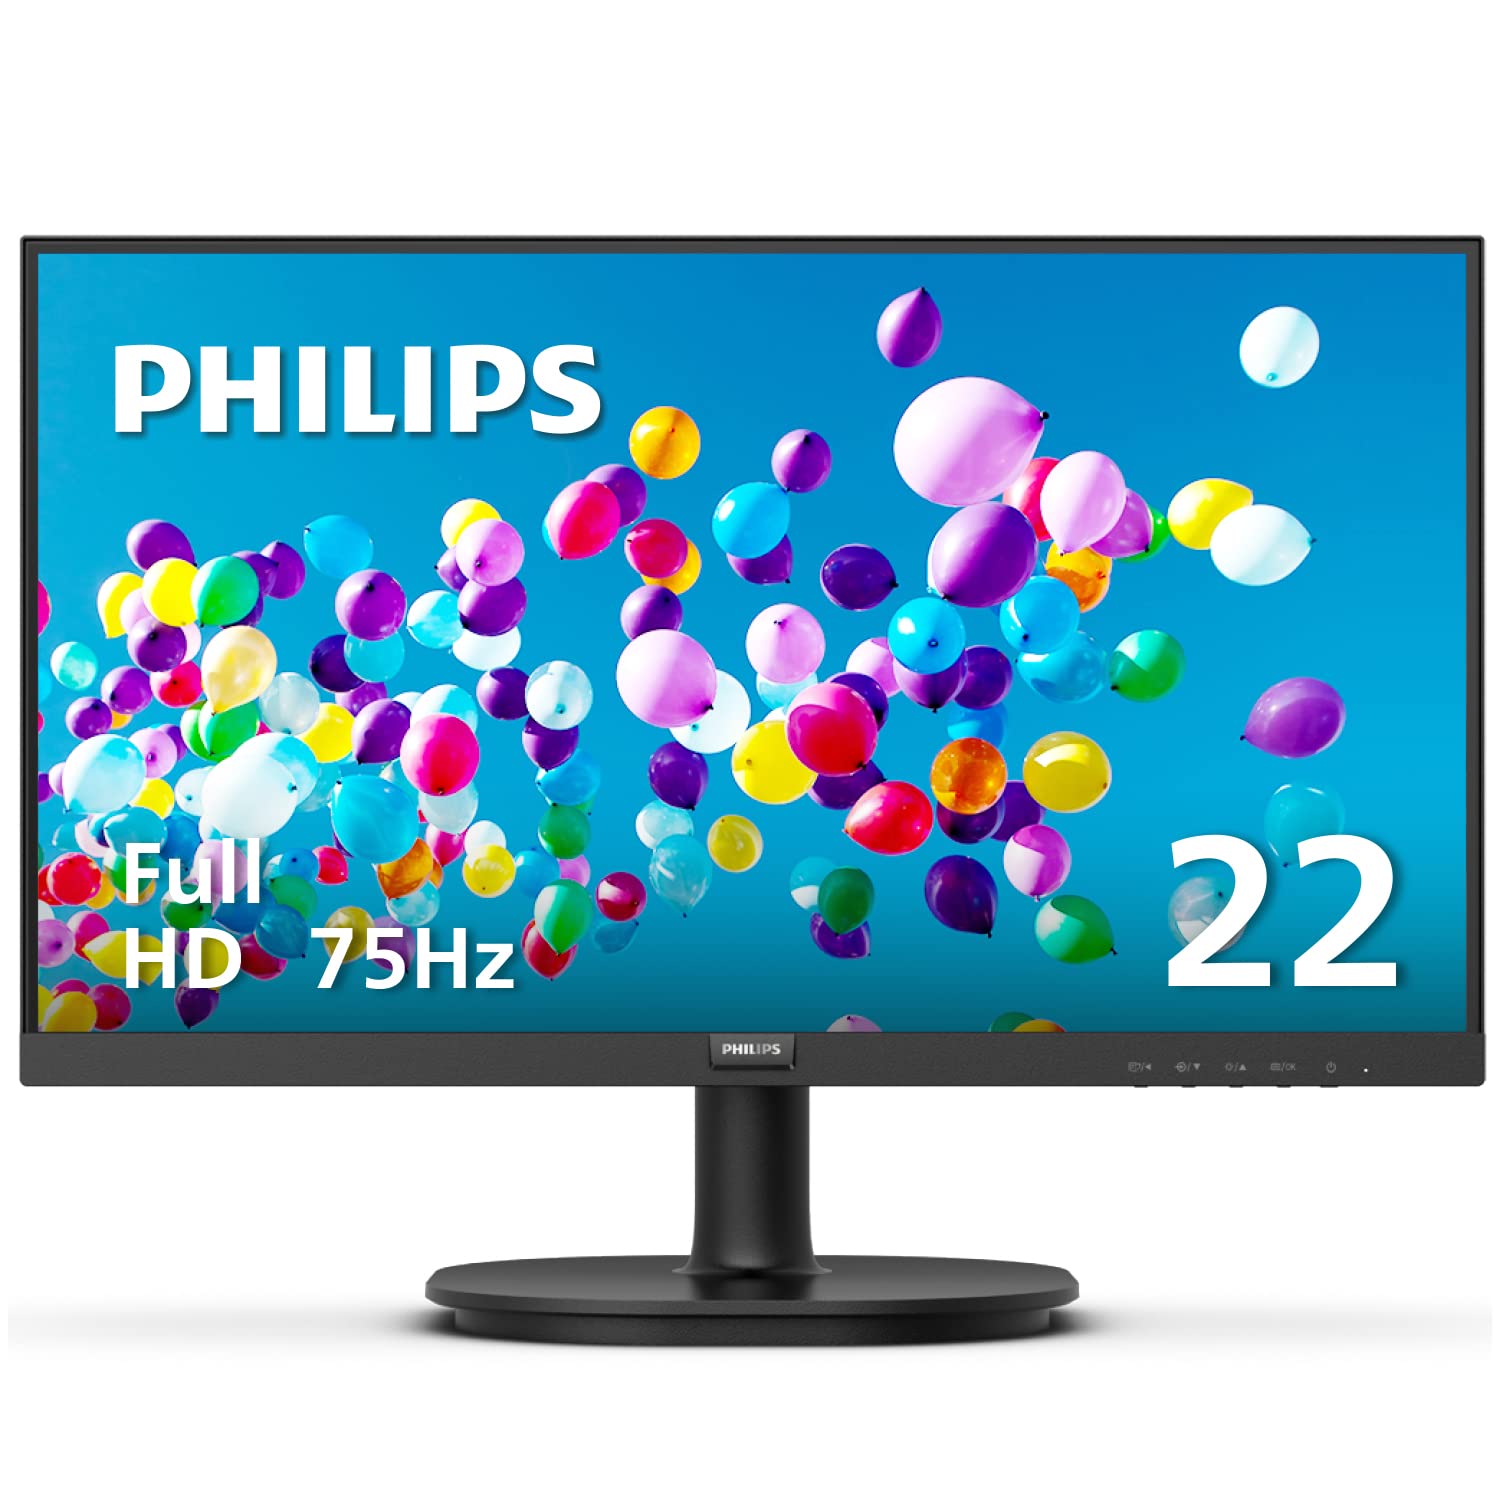 Philips Computer Monitors Philips Pure 2